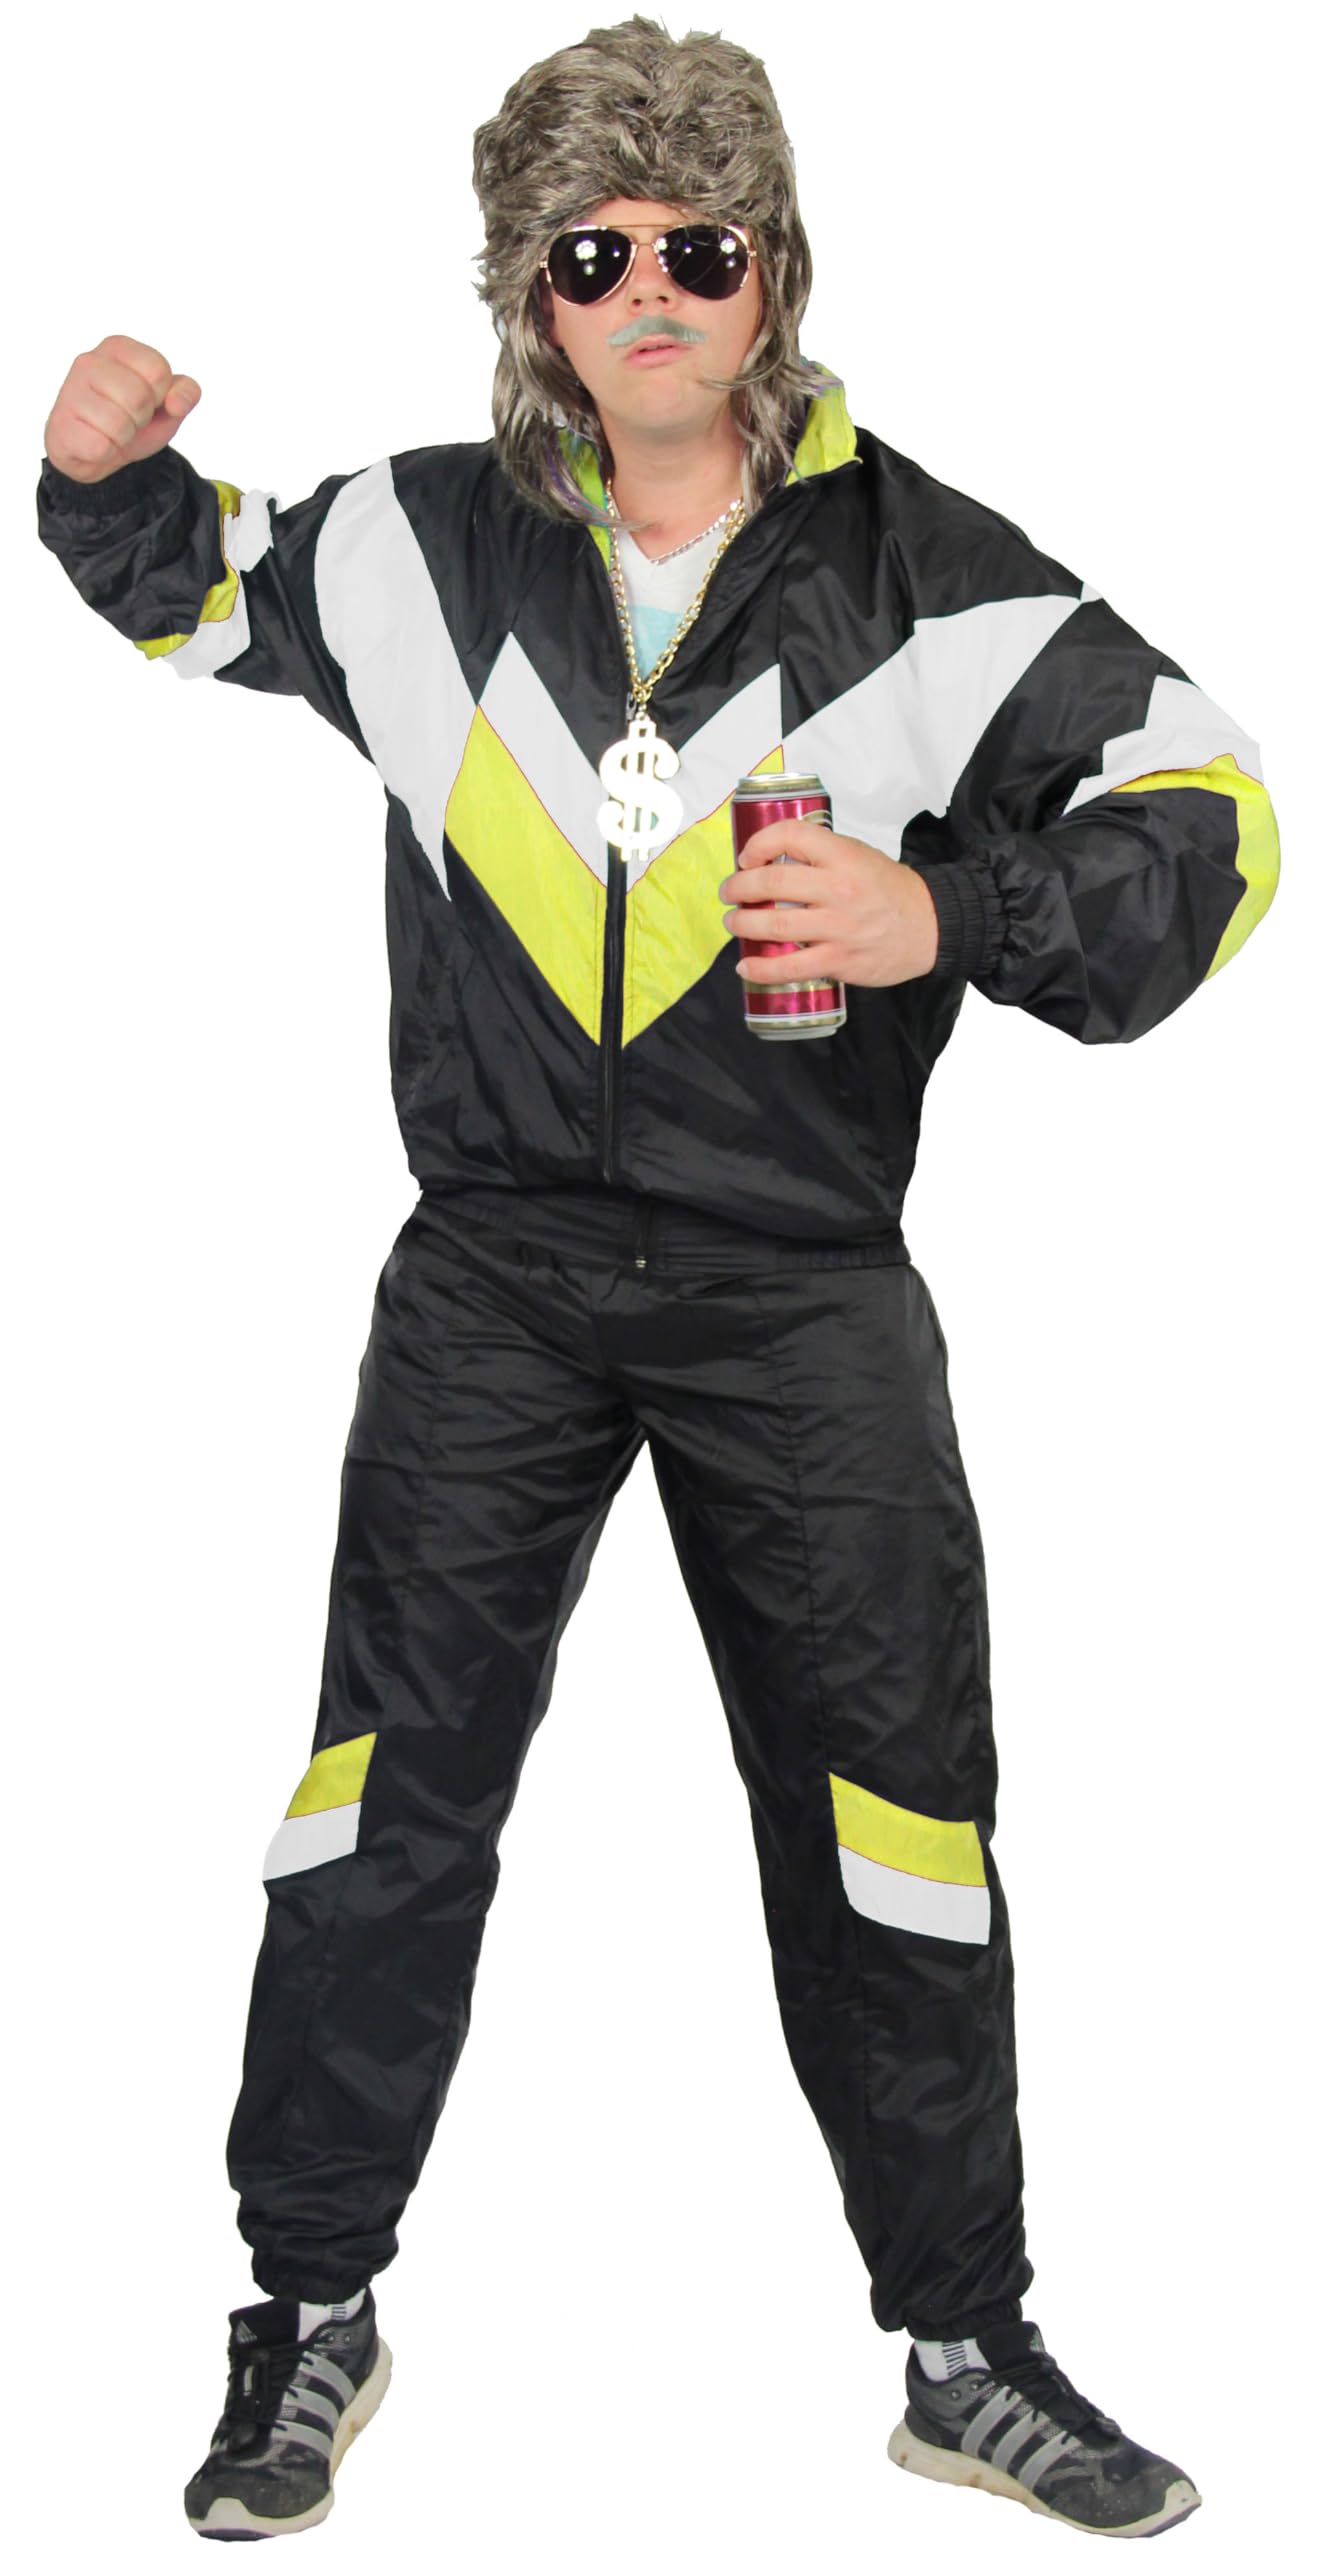 Foxxeo 80er Jahre Kostüm für Erwachsene Premium 80s Trainingsanzug Assianzug Assi - Herren Größe S-XXXXL - Fasching Karneval Anzug, Farbe schwarz weiss gelb, Größe: XXXL